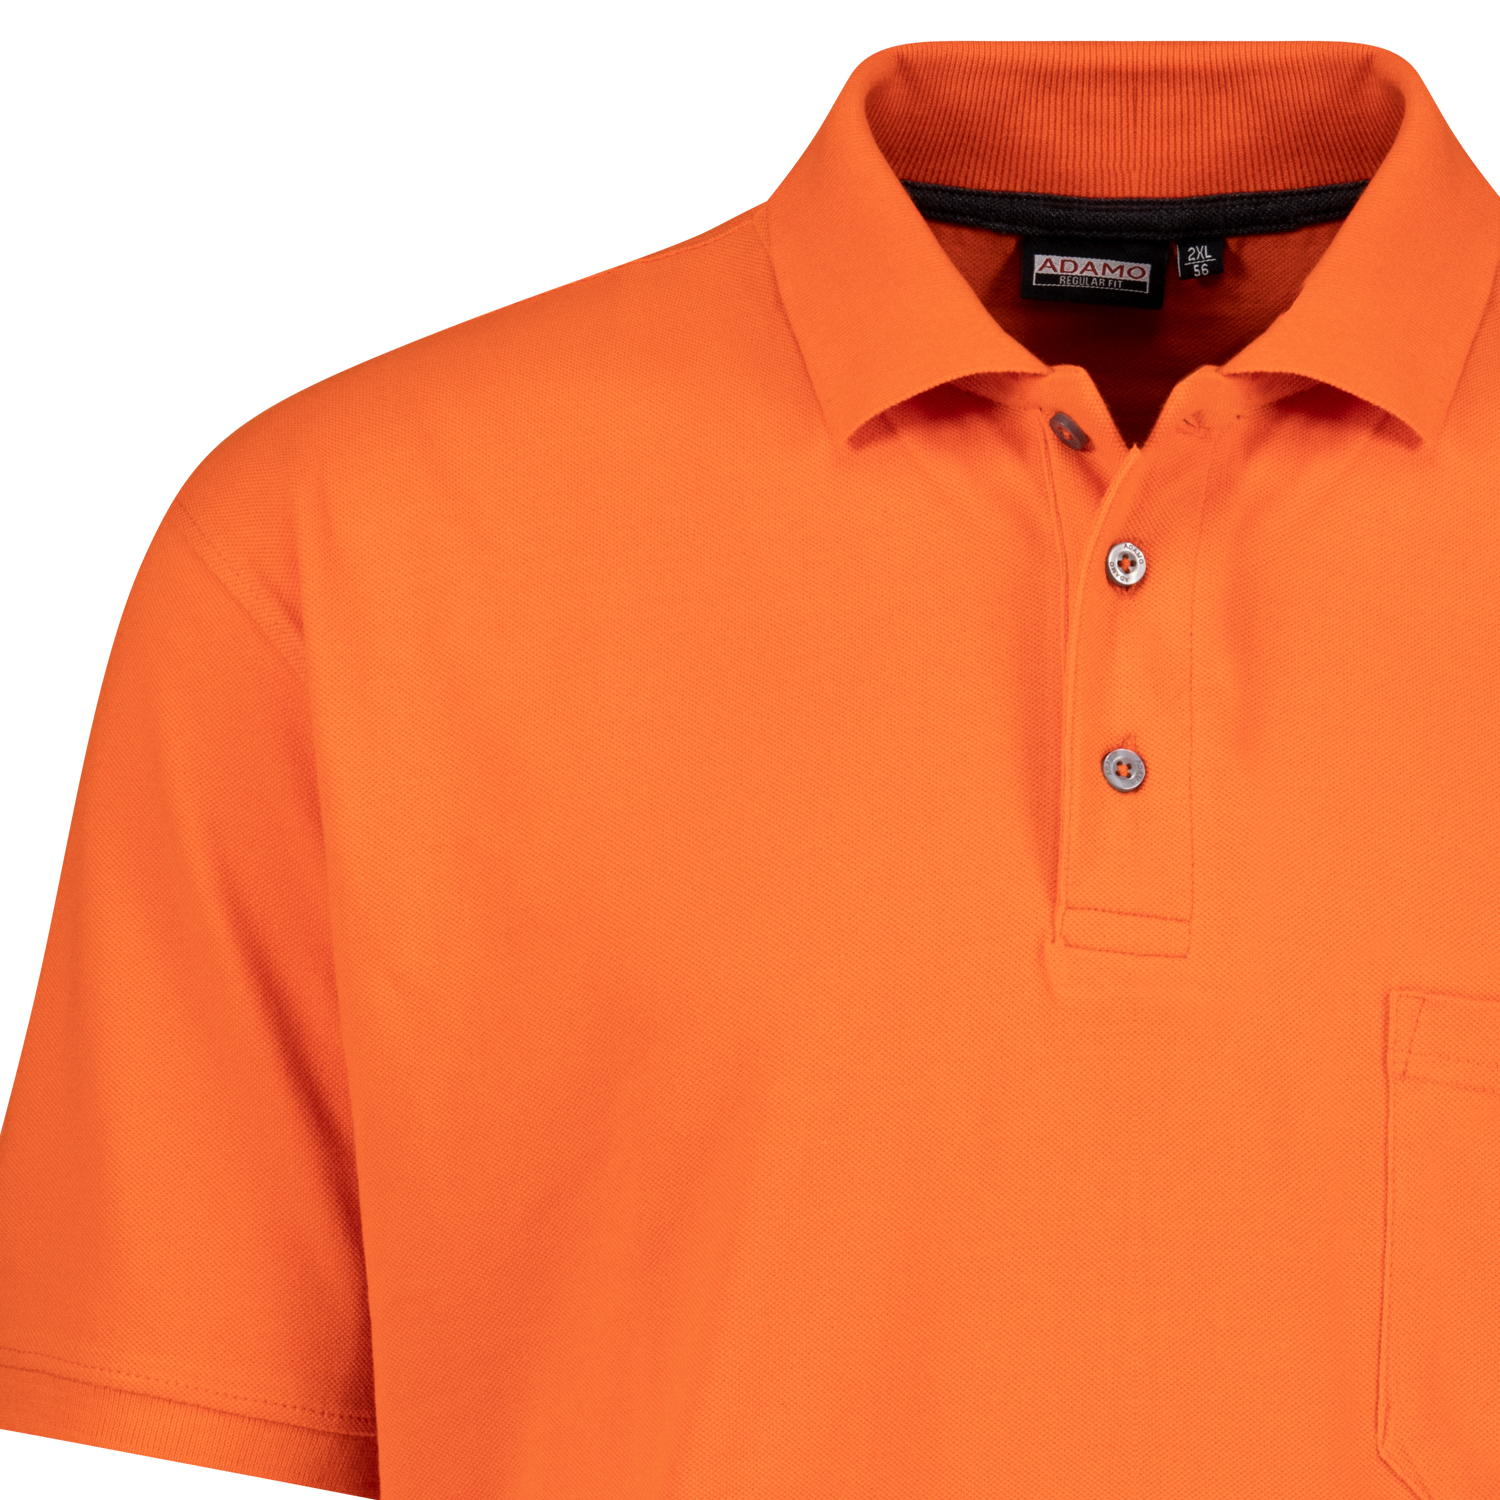 Orange farbenes kurzarm Polo Shirt KLAAS von ADAMO in Pique Qualität für Herren in großen Größen bis 10XL